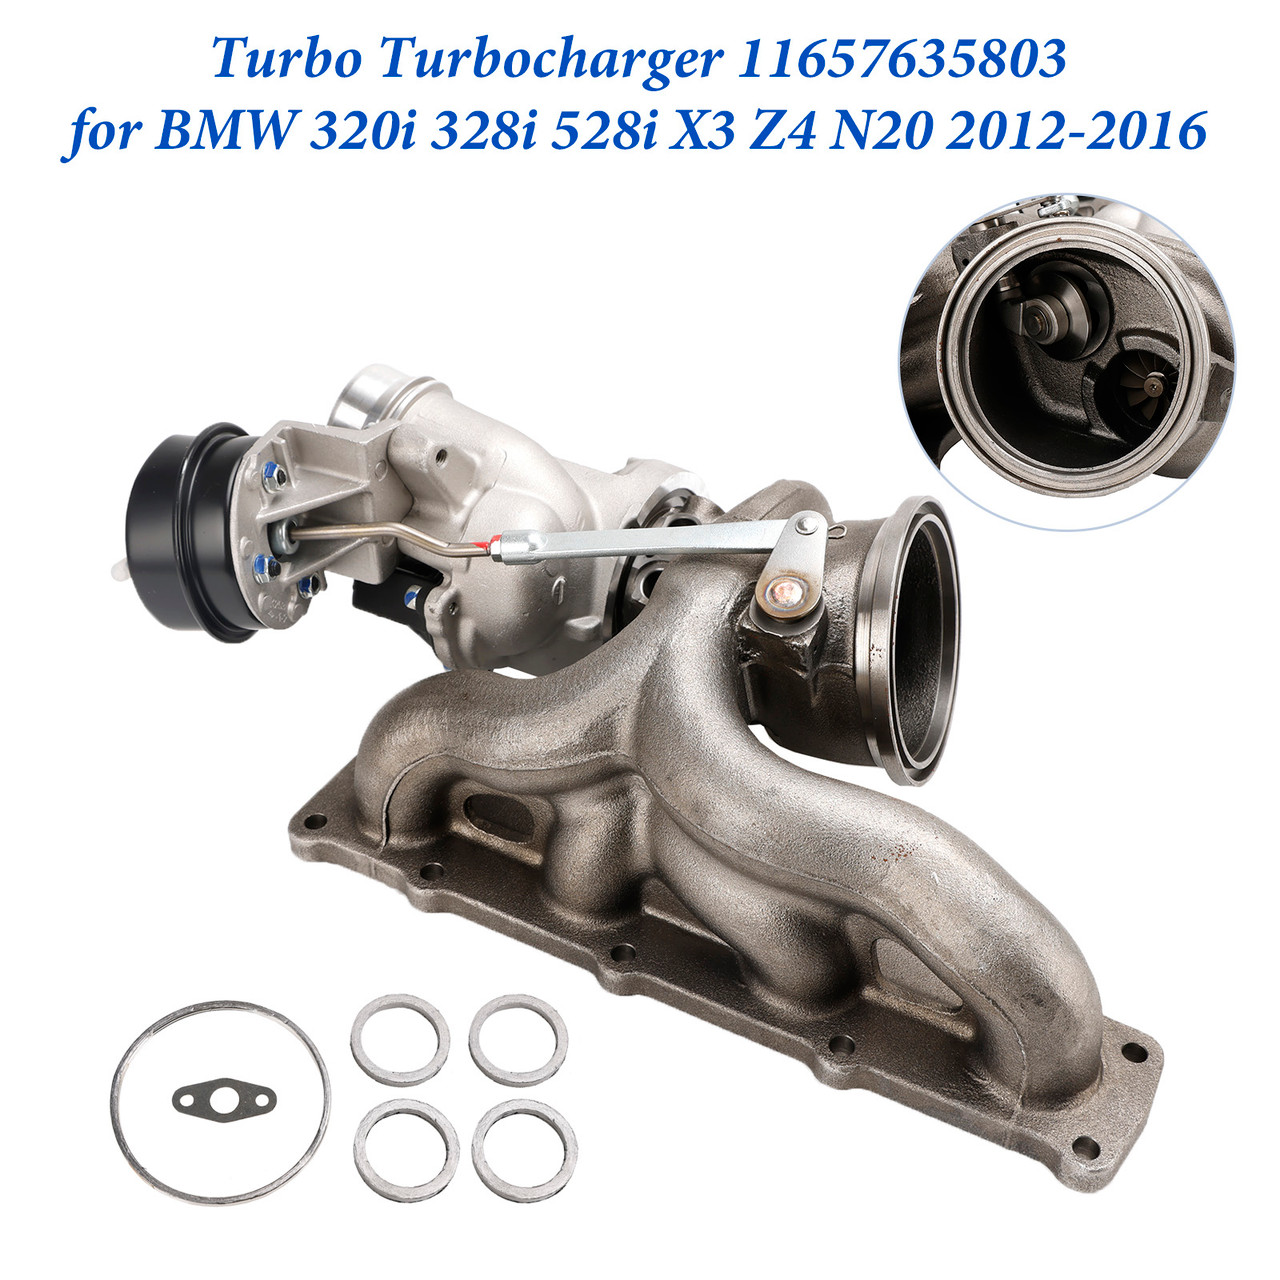 Turbo Turbocharger 11657635803 for BMW 320i 328i 528i X3 Z4 N20 2012-2016